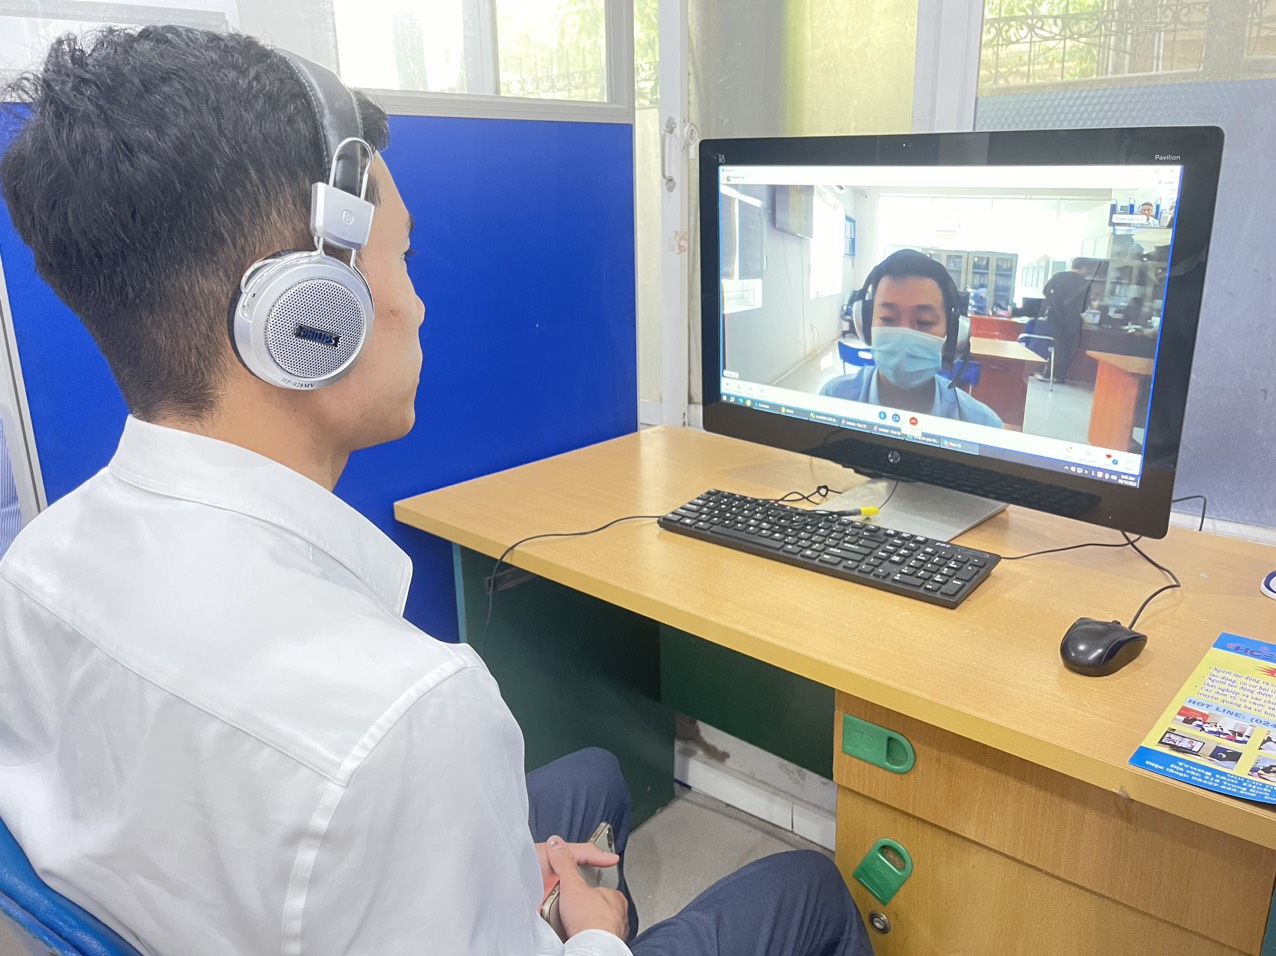 Phiên giao dịch việc làm trực tuyến kết nối lao động 8 tỉnh phía Bắc vừa được Trung tâm dịch vụ việc làm Hà Nội tổ chức 